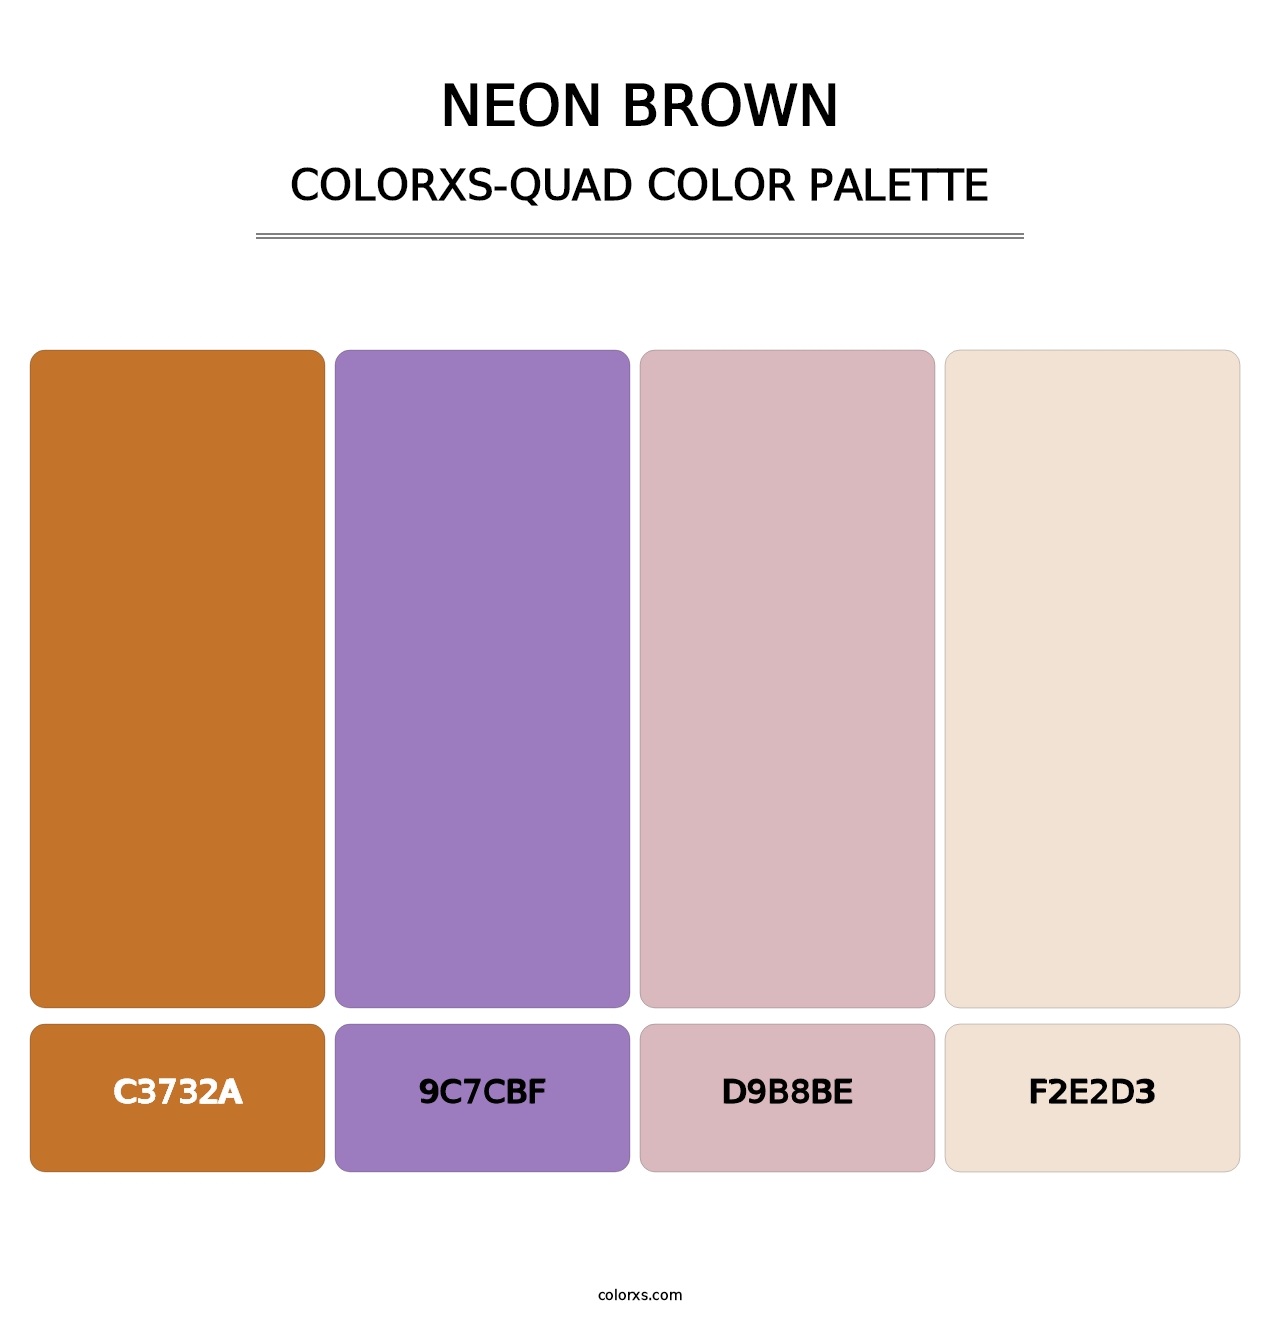 Neon Brown - Colorxs Quad Palette